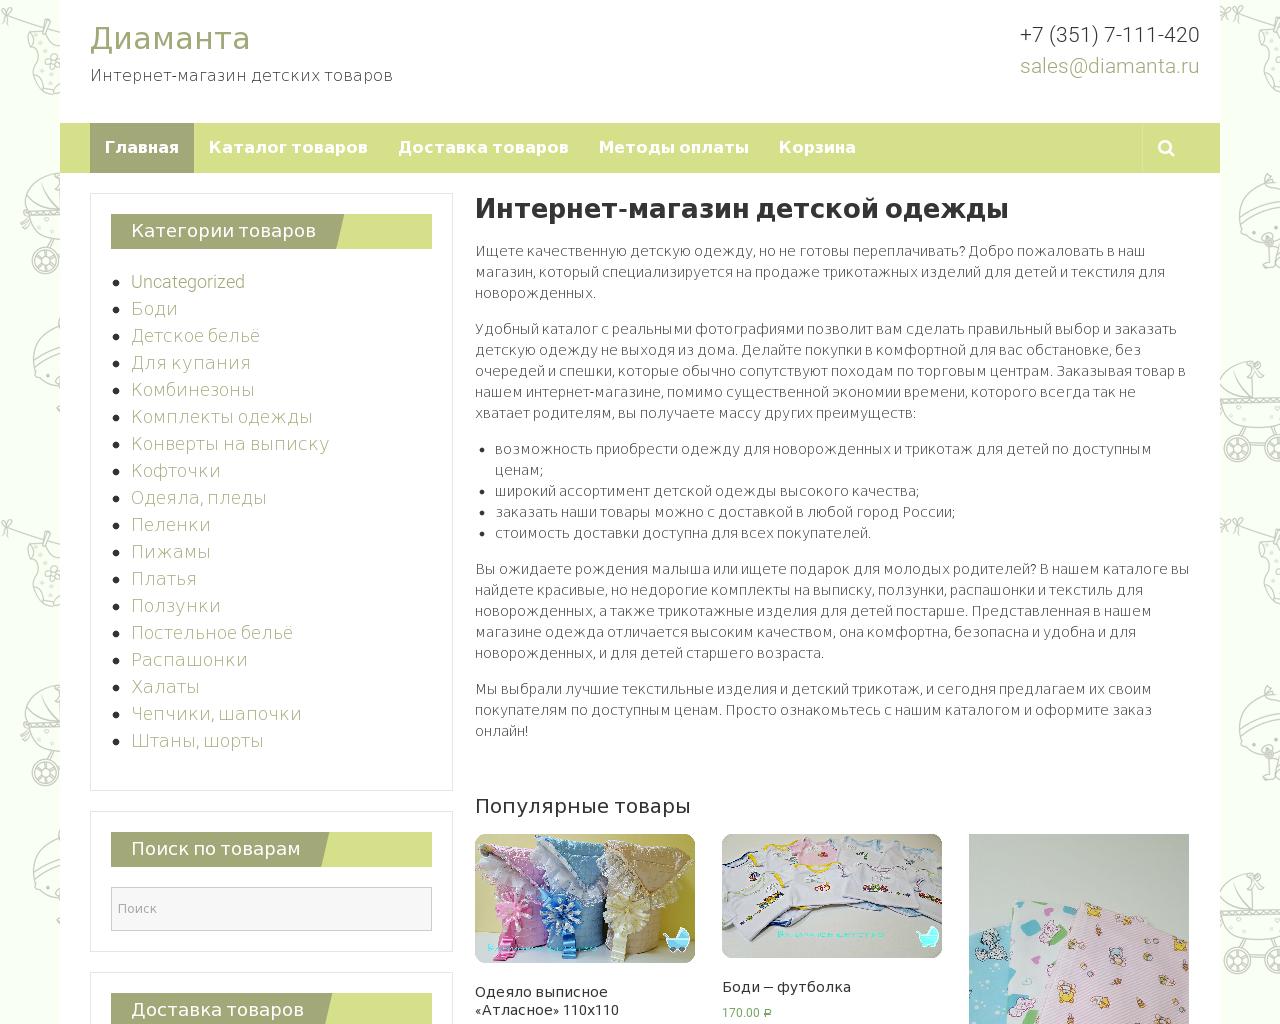 Изображение сайта diamanta.ru в разрешении 1280x1024